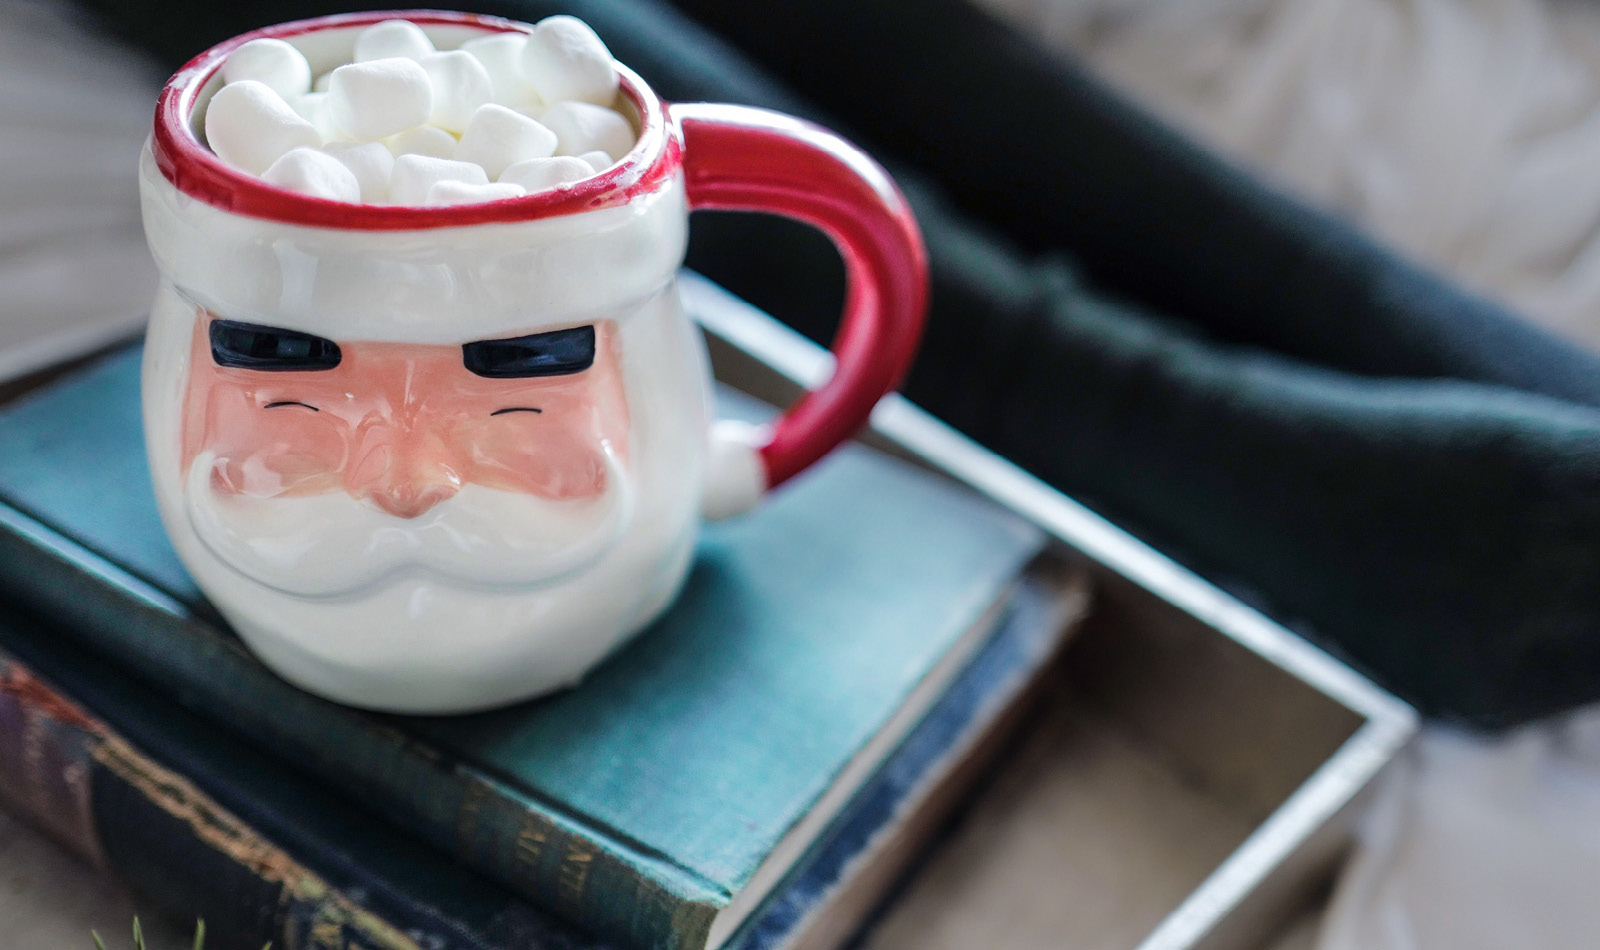 Santa mug